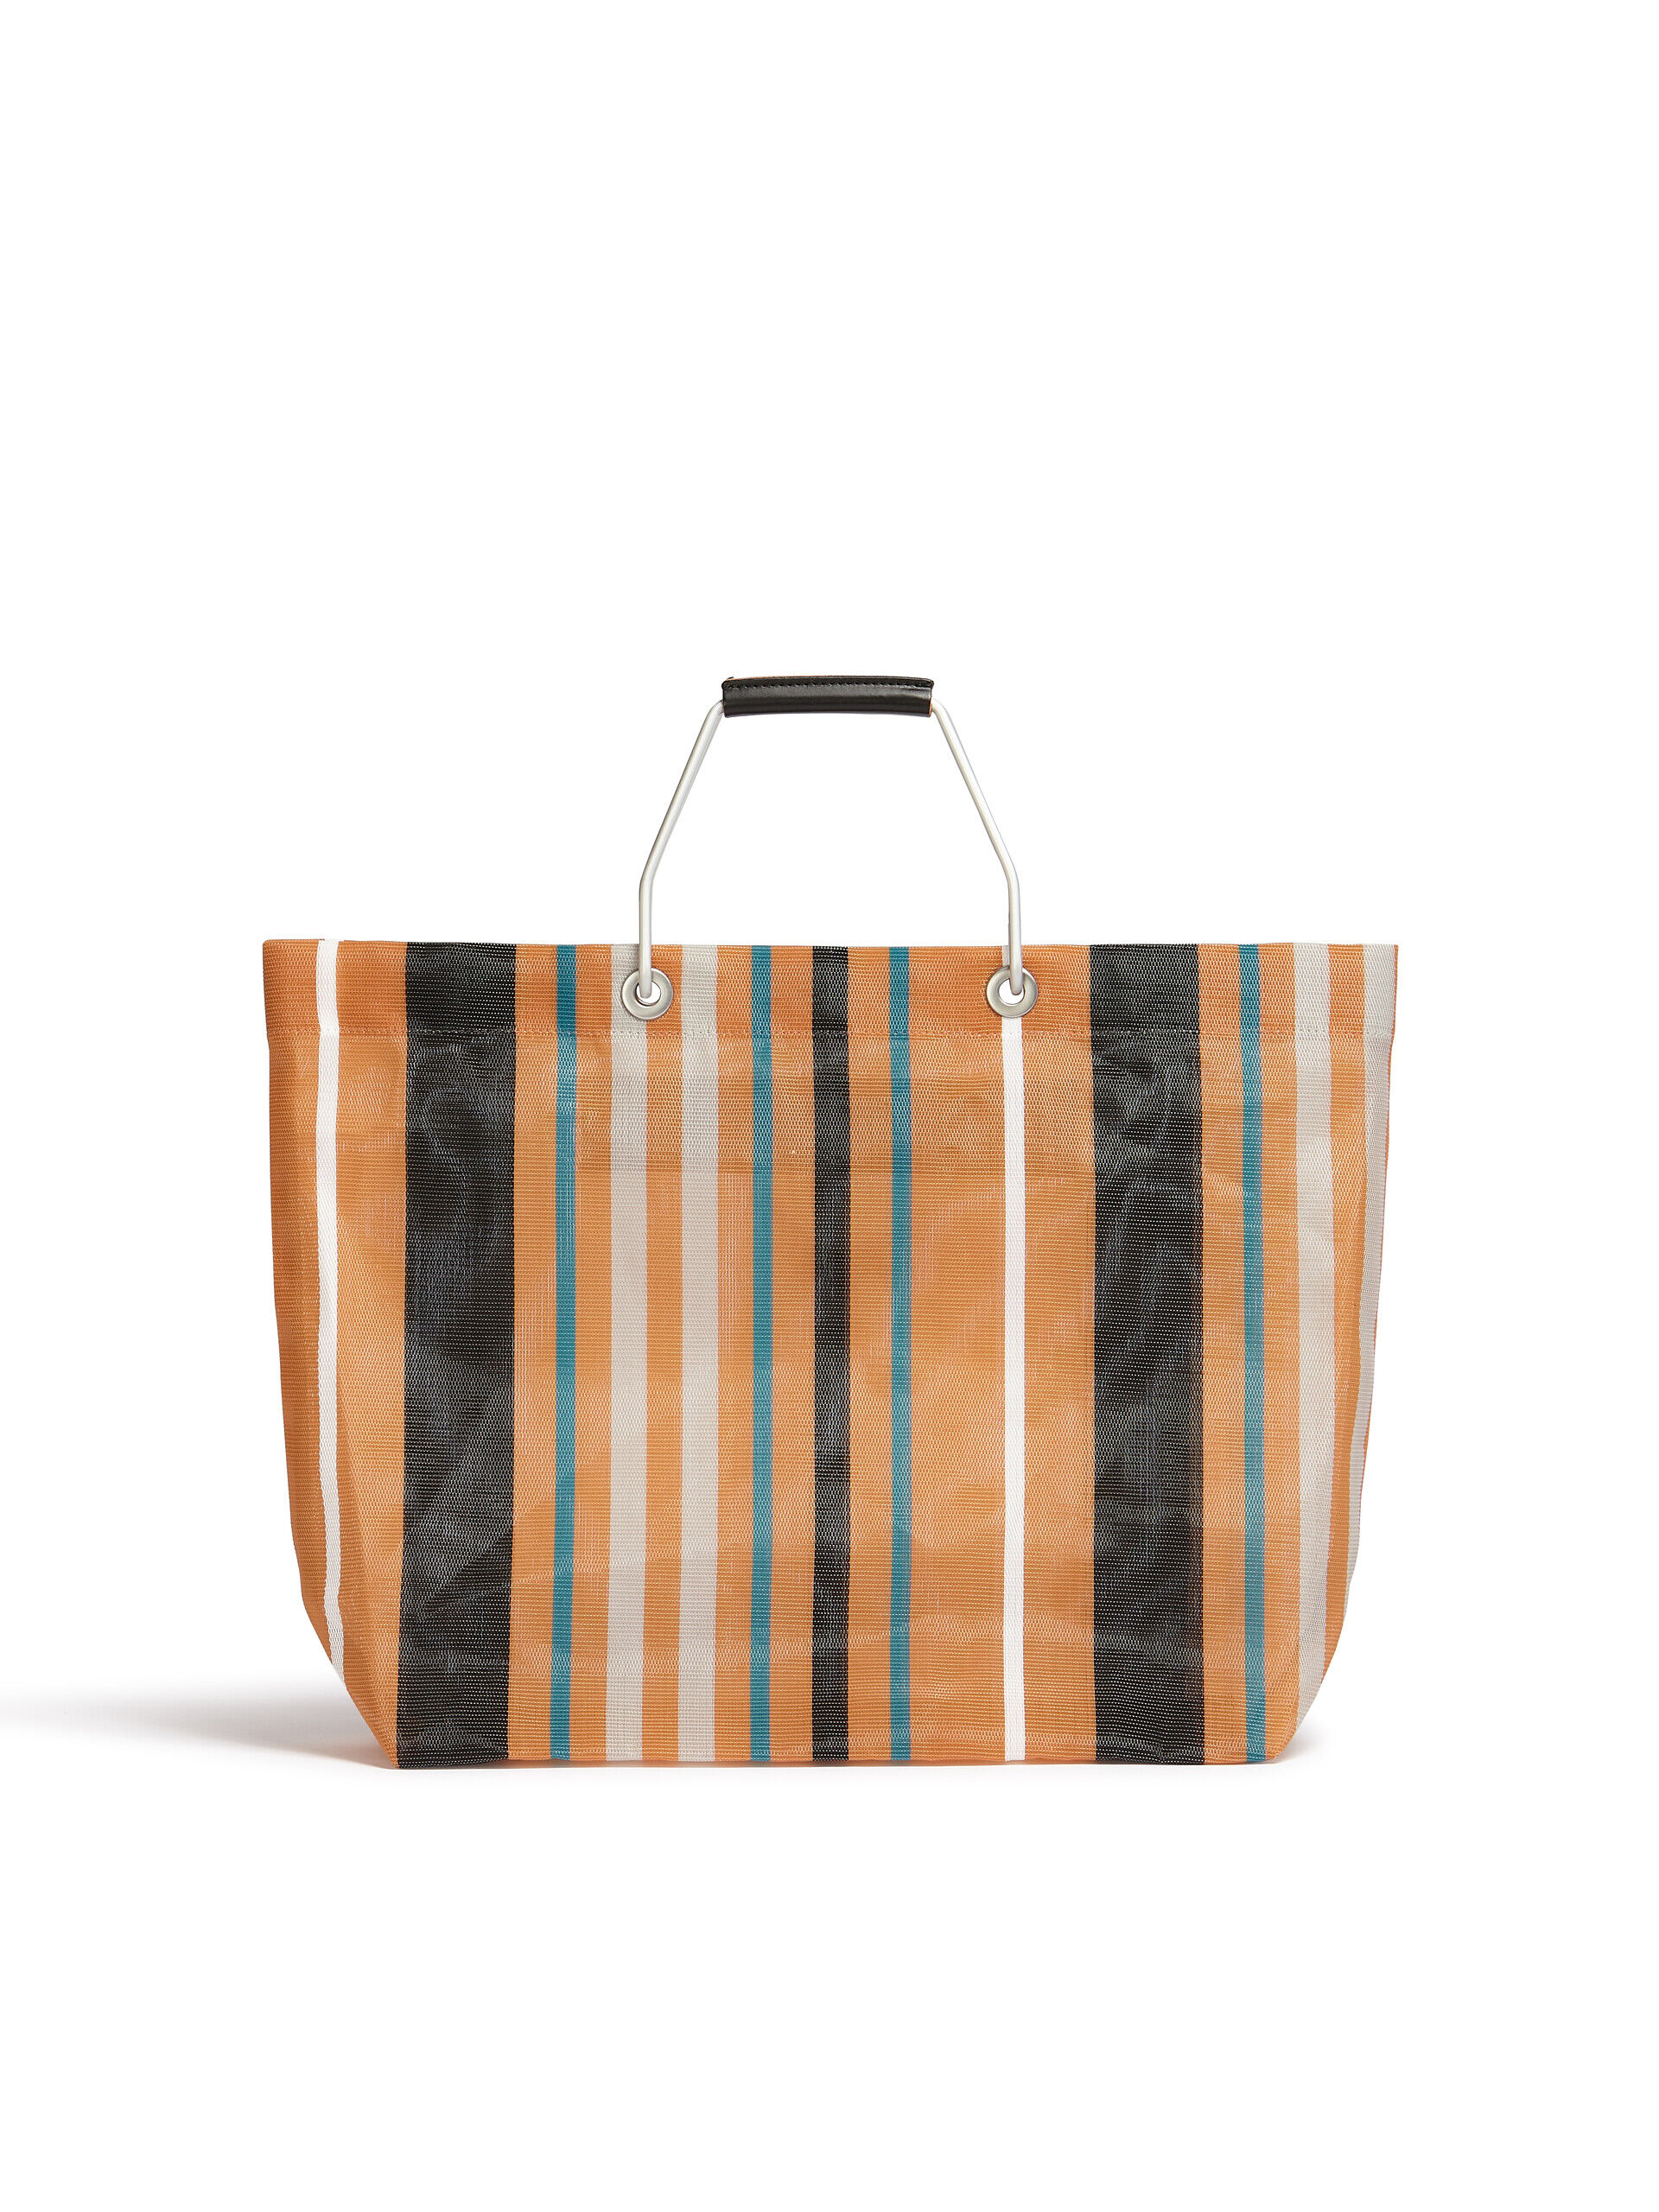 MARNI MARKET STRIPE multicolor orange bag | Marni